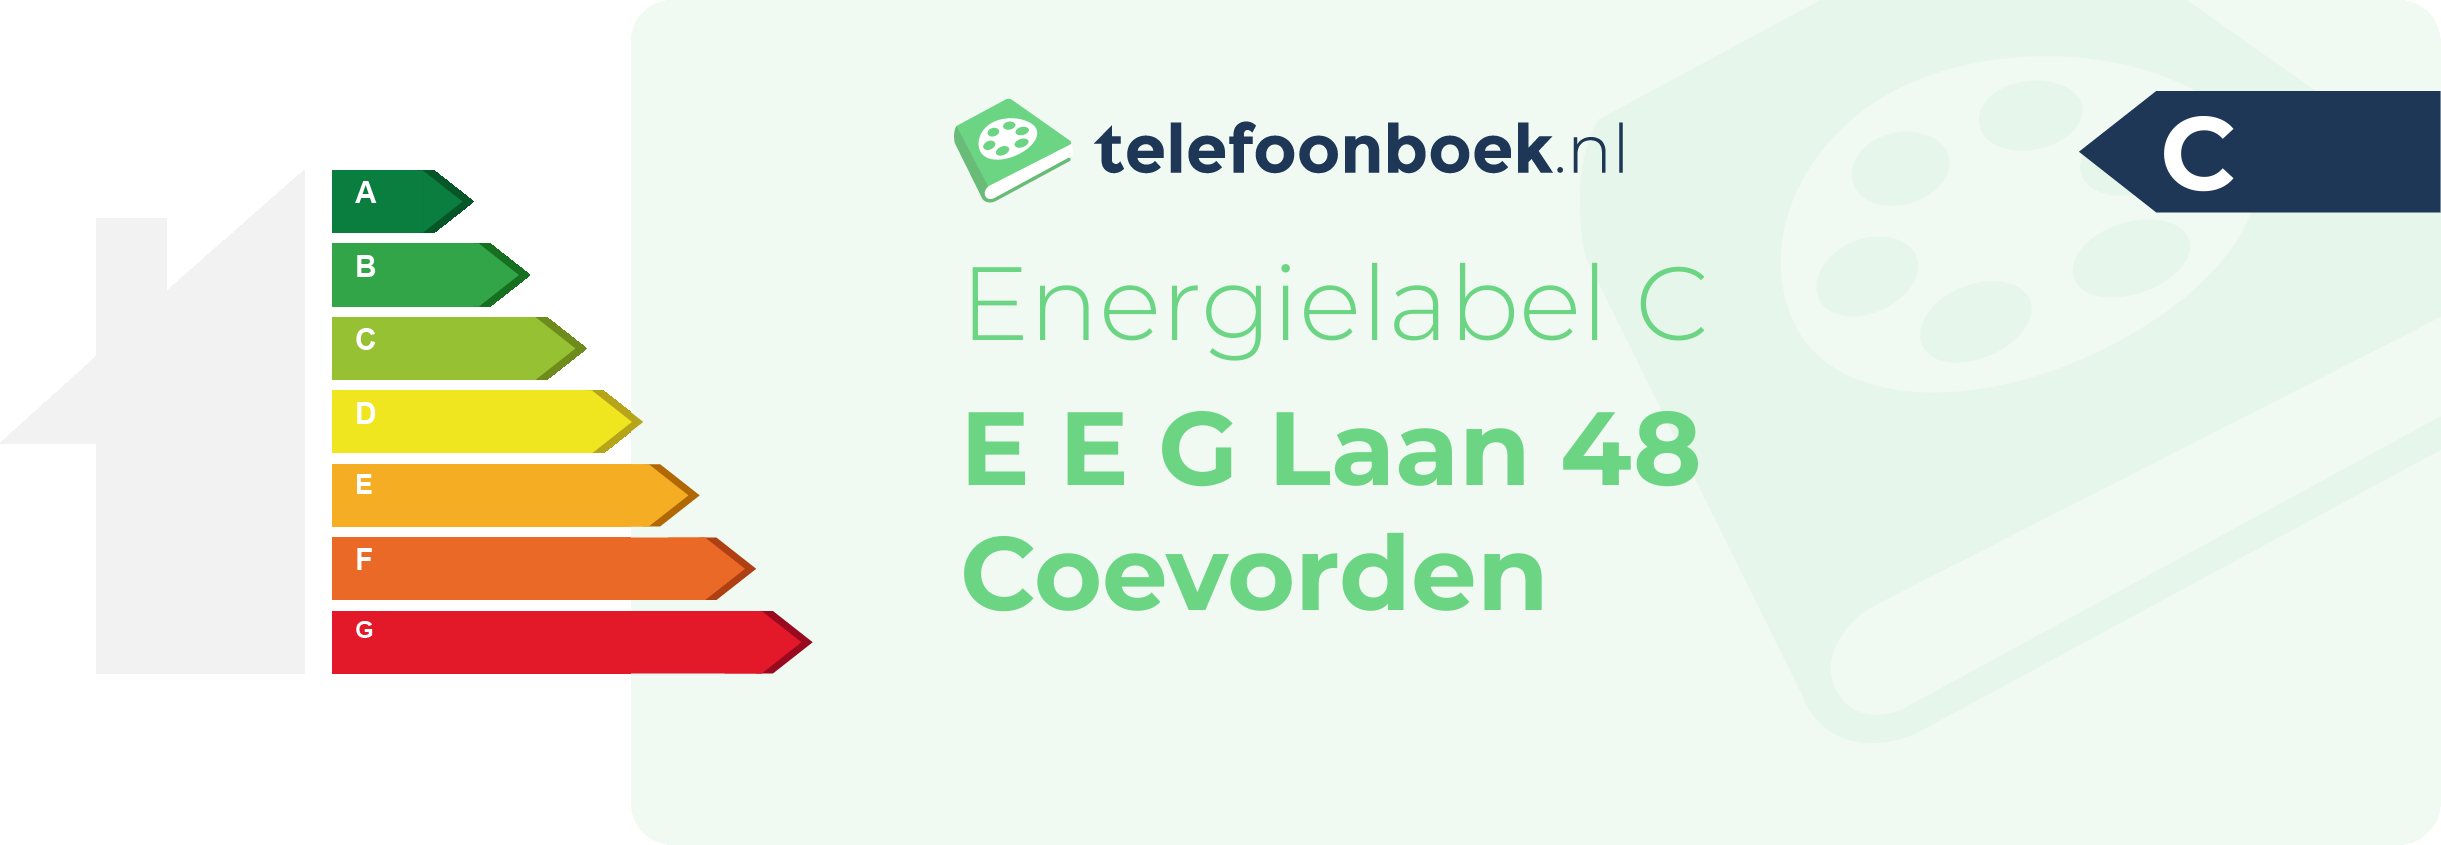 Energielabel E E G Laan 48 Coevorden